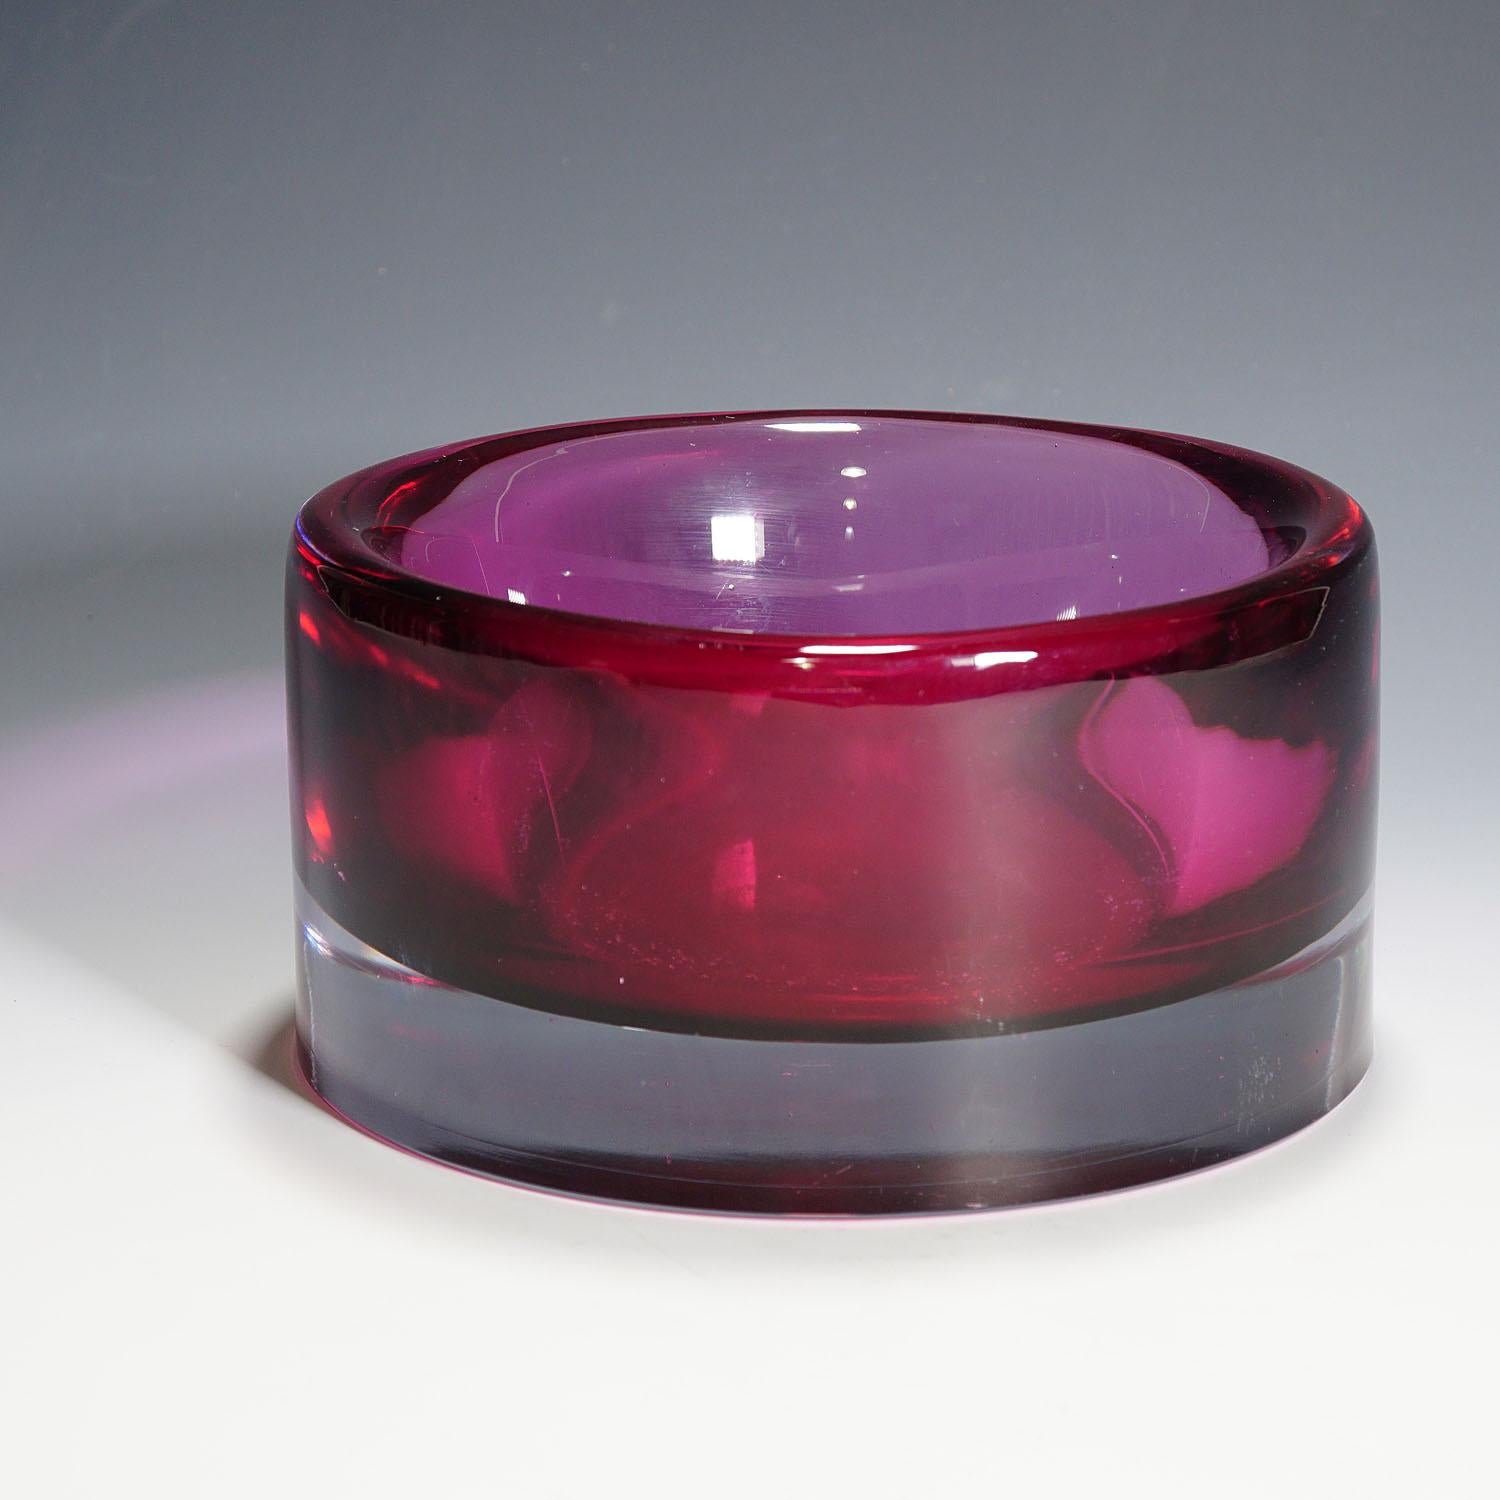 Un très lourd bol en verre sommerso fabriqué par Seguso Vetri D'Arte et conçu par Mario Pinzoni vers 1969. Fabriqué en verre sommerso épais violet et rubis. Une authentique pièce moderne du milieu du siècle provenant de Murano. Très bon état avec